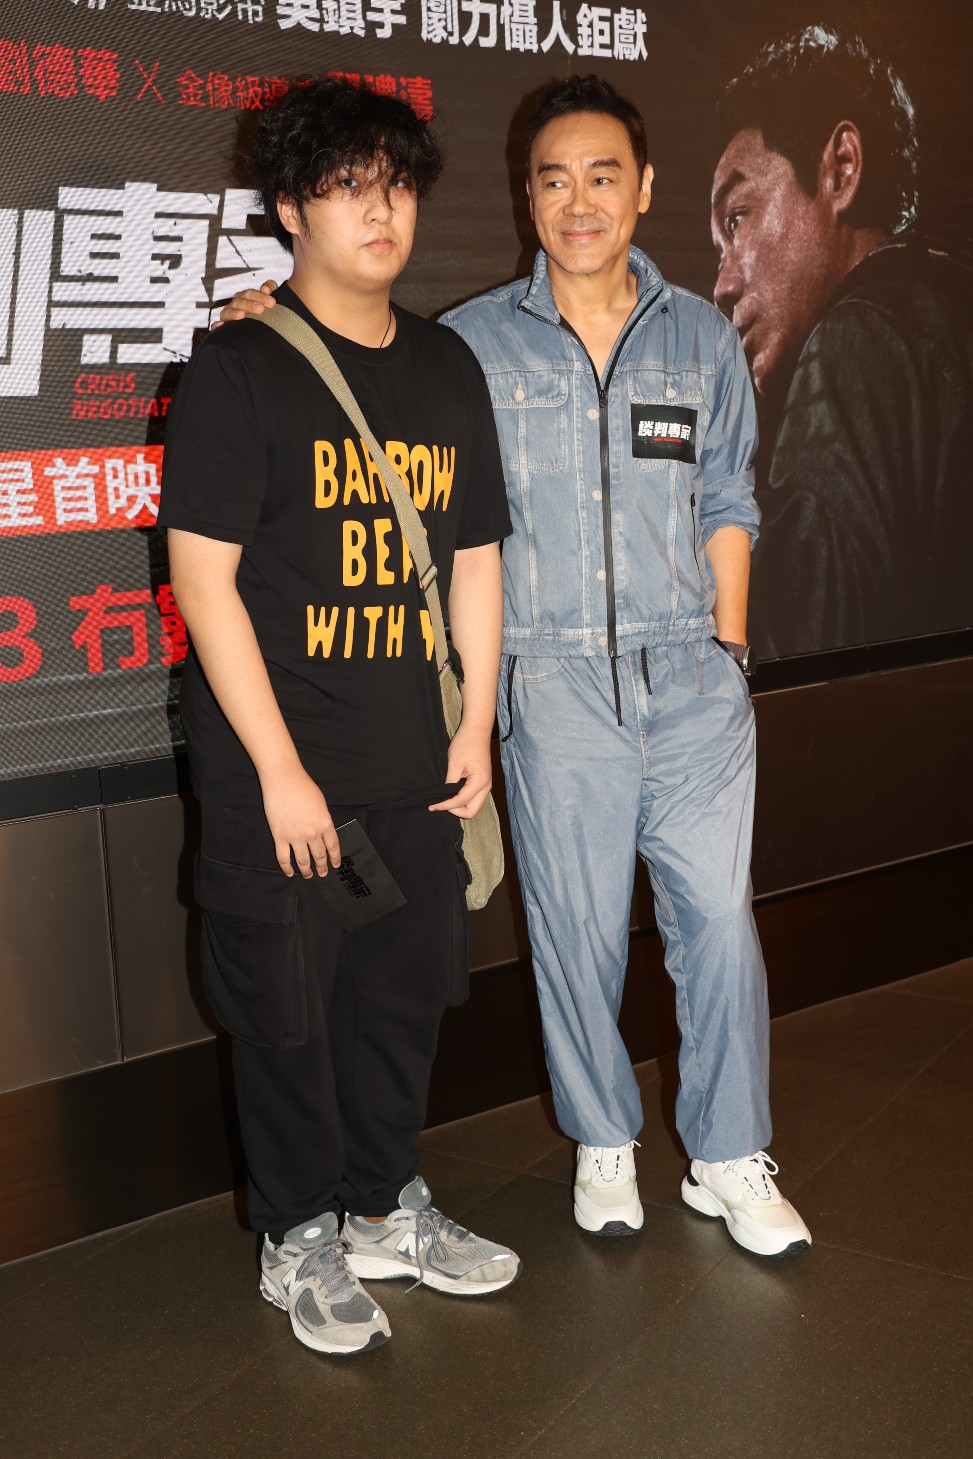 吳費曼在現場主動跟劉青雲合照。